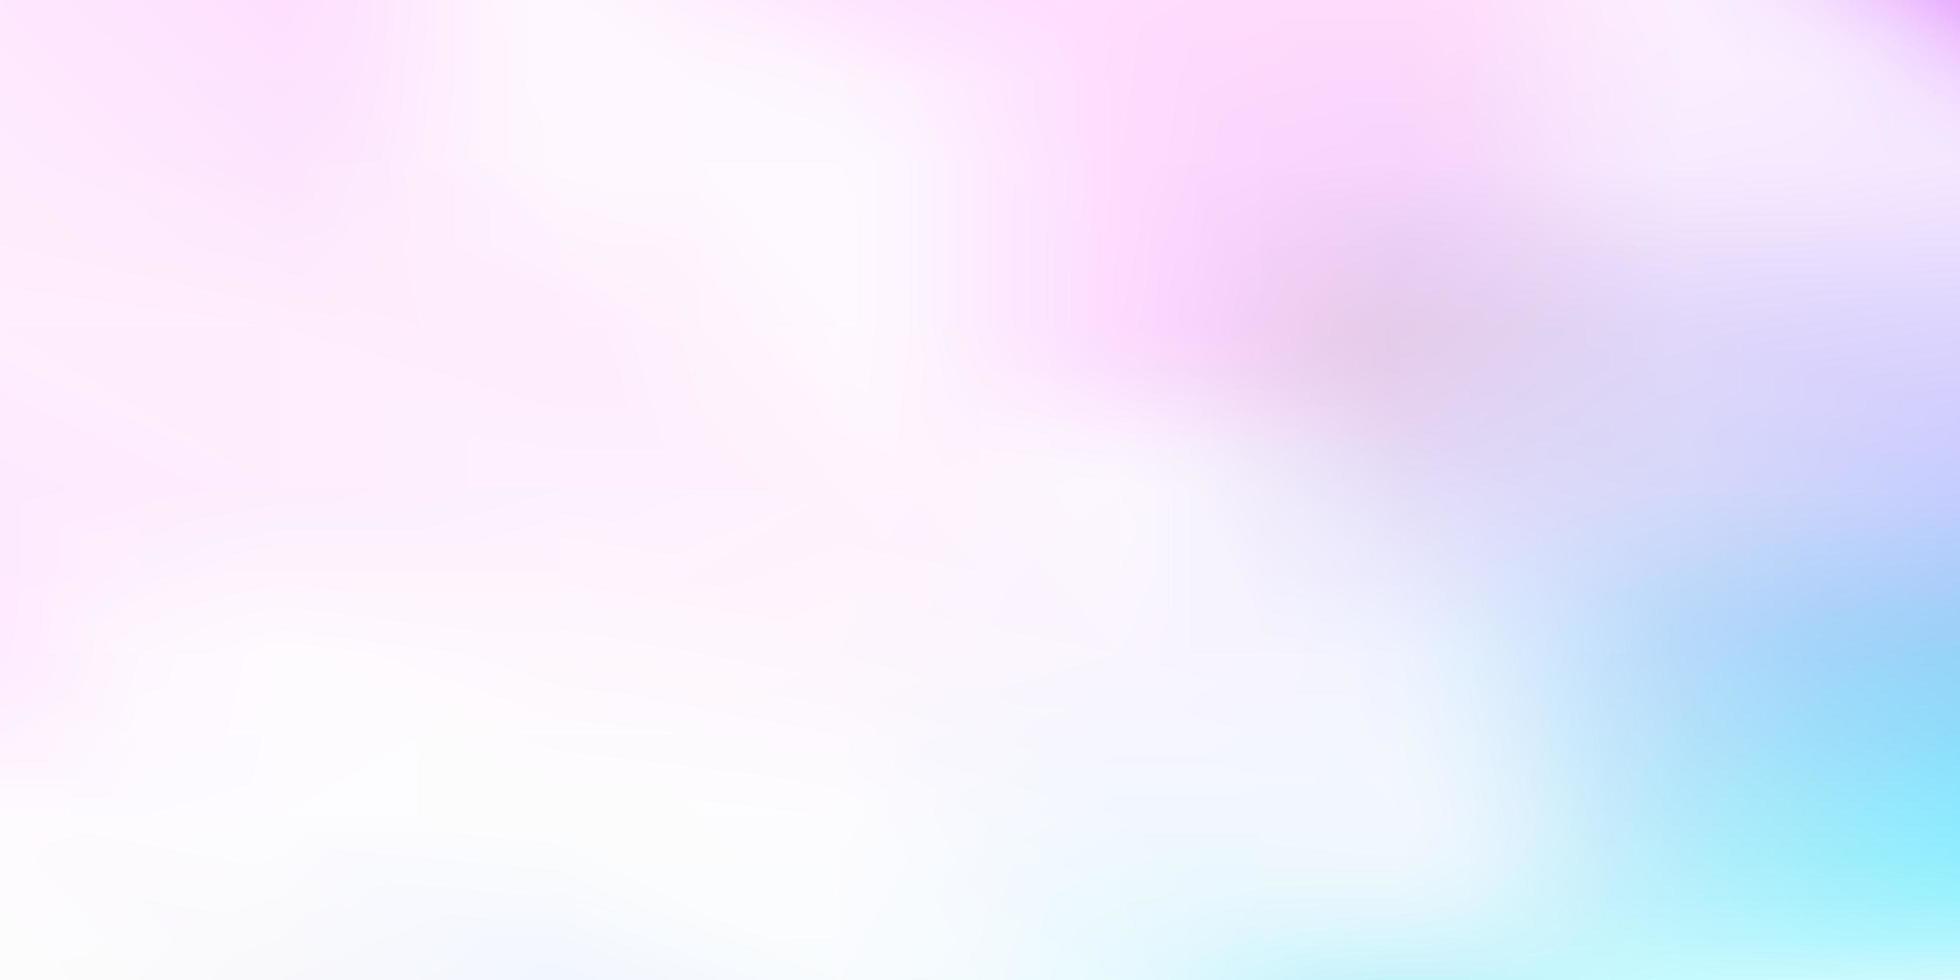 sfondo sfocato vettoriale rosa chiaro, blu.